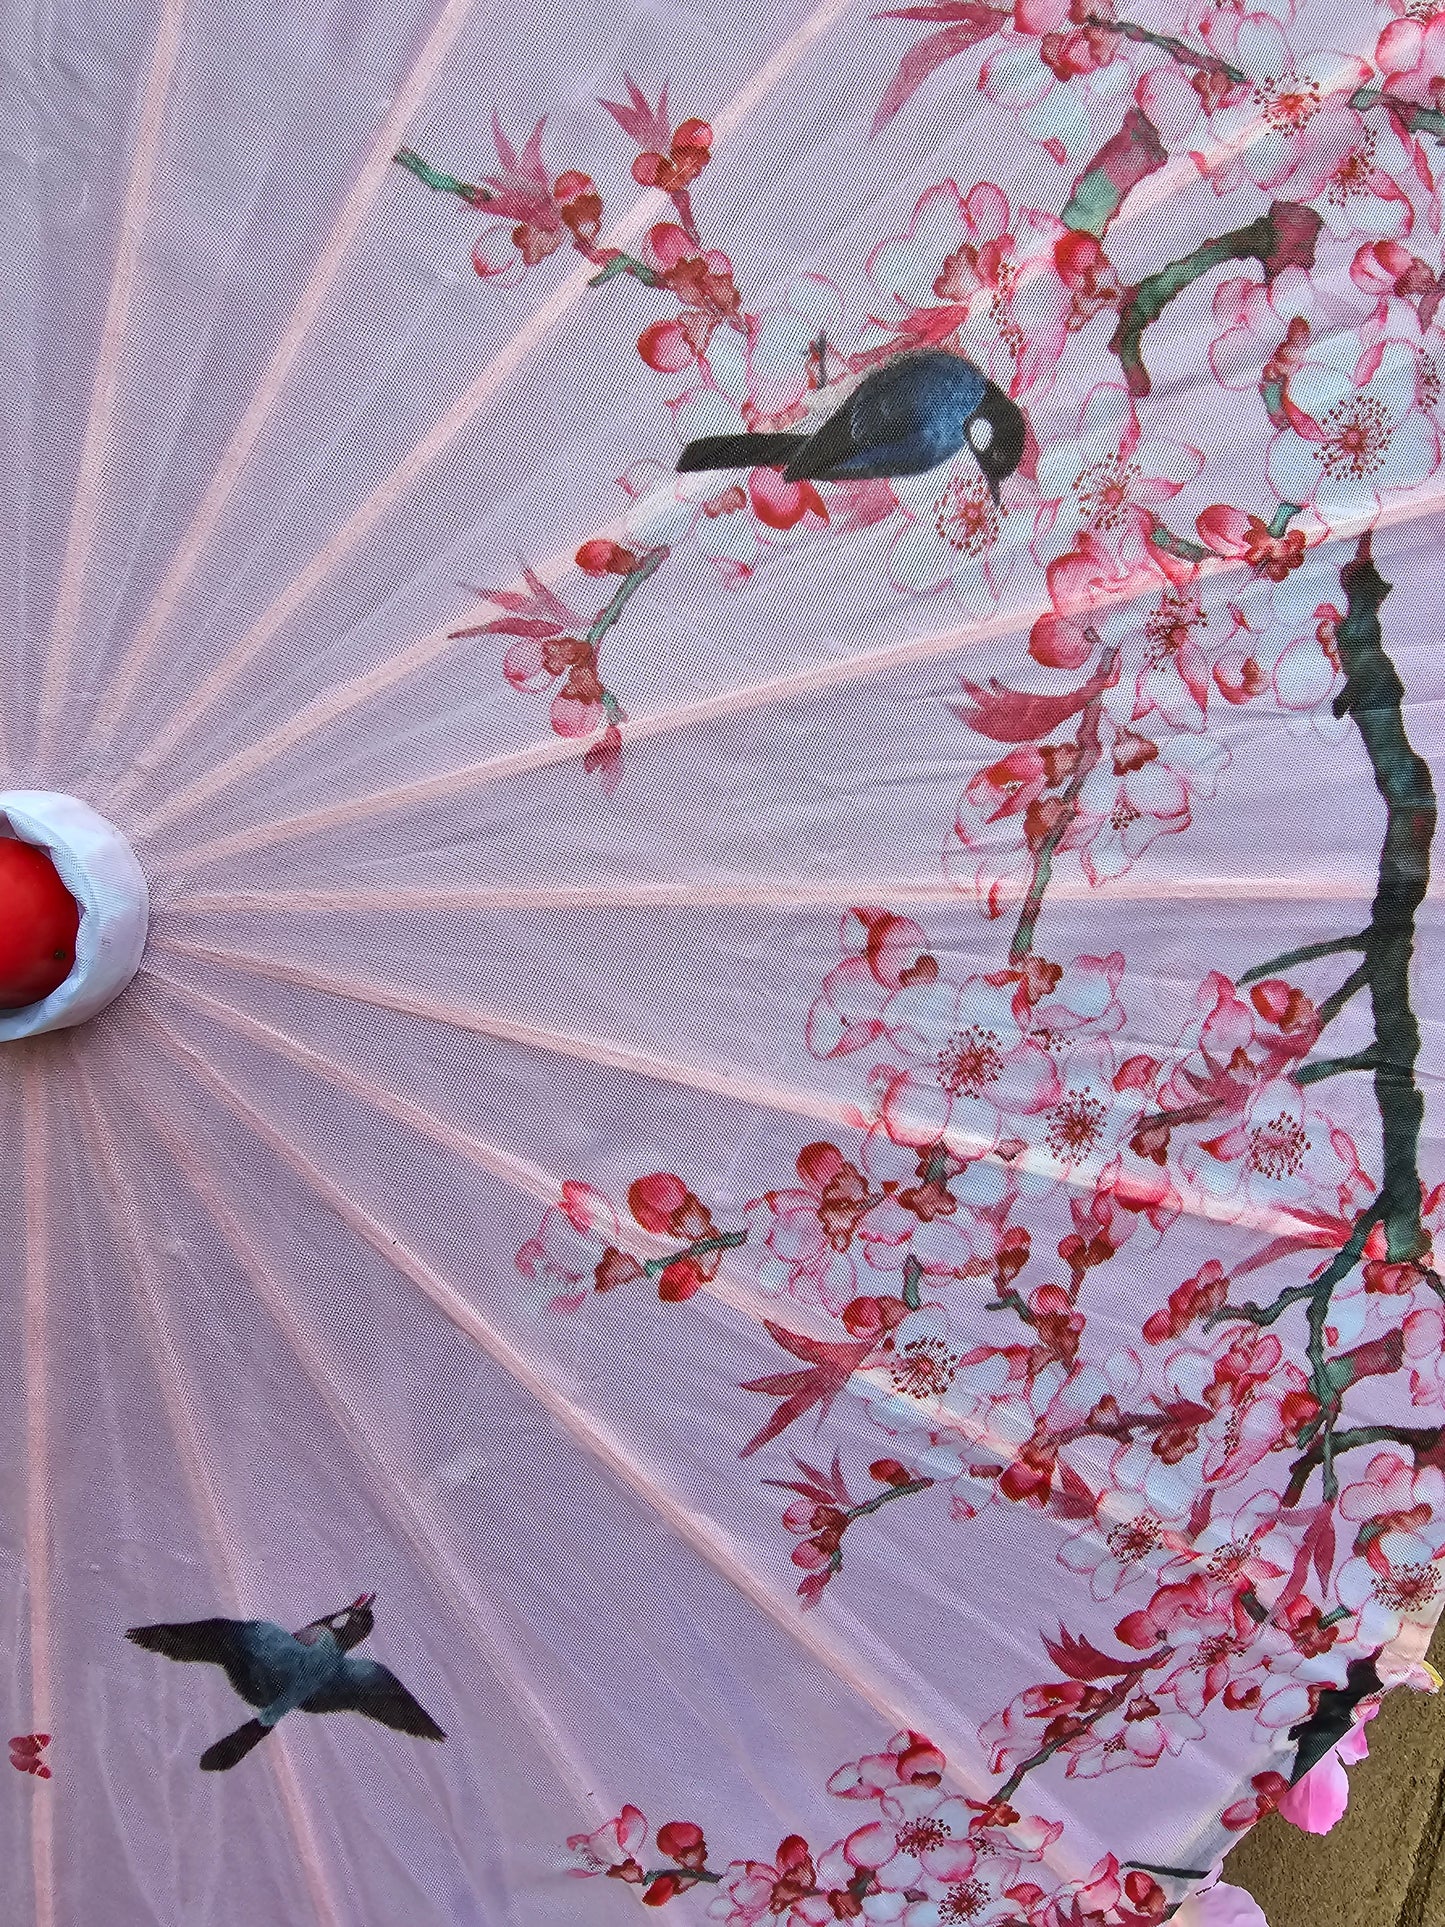 Cherry blossom parasol